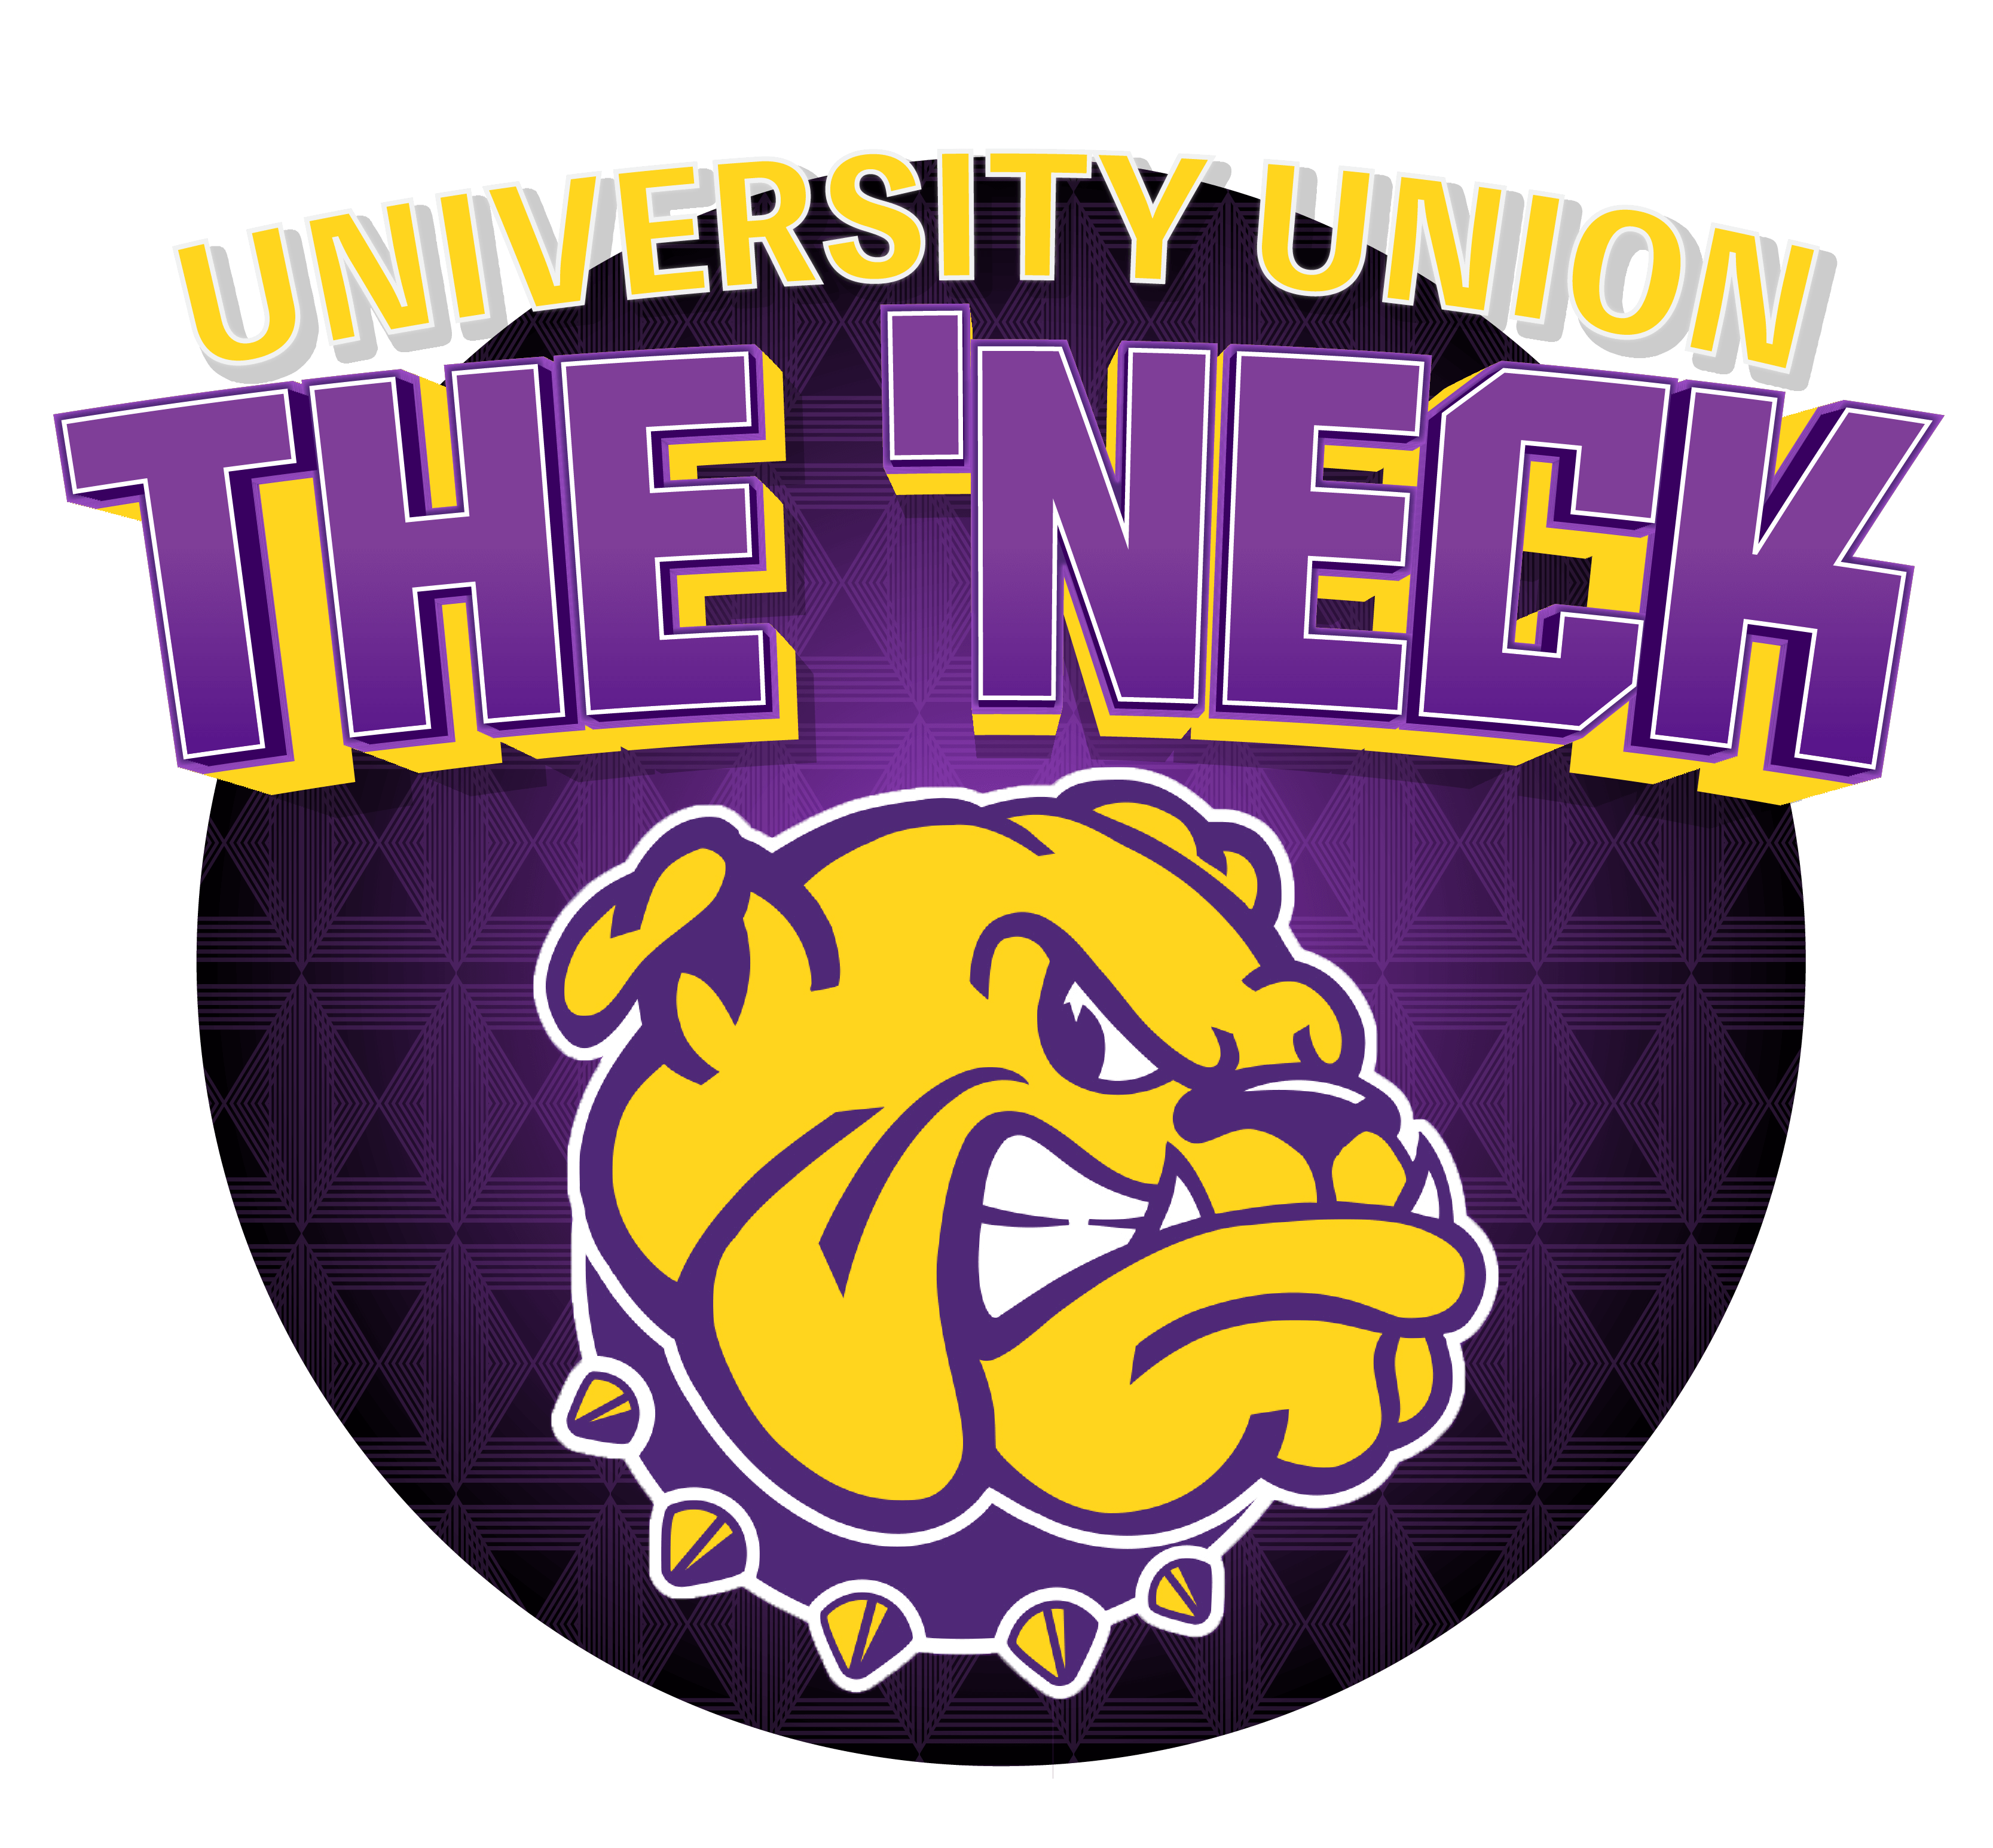 The 'Neck Logo